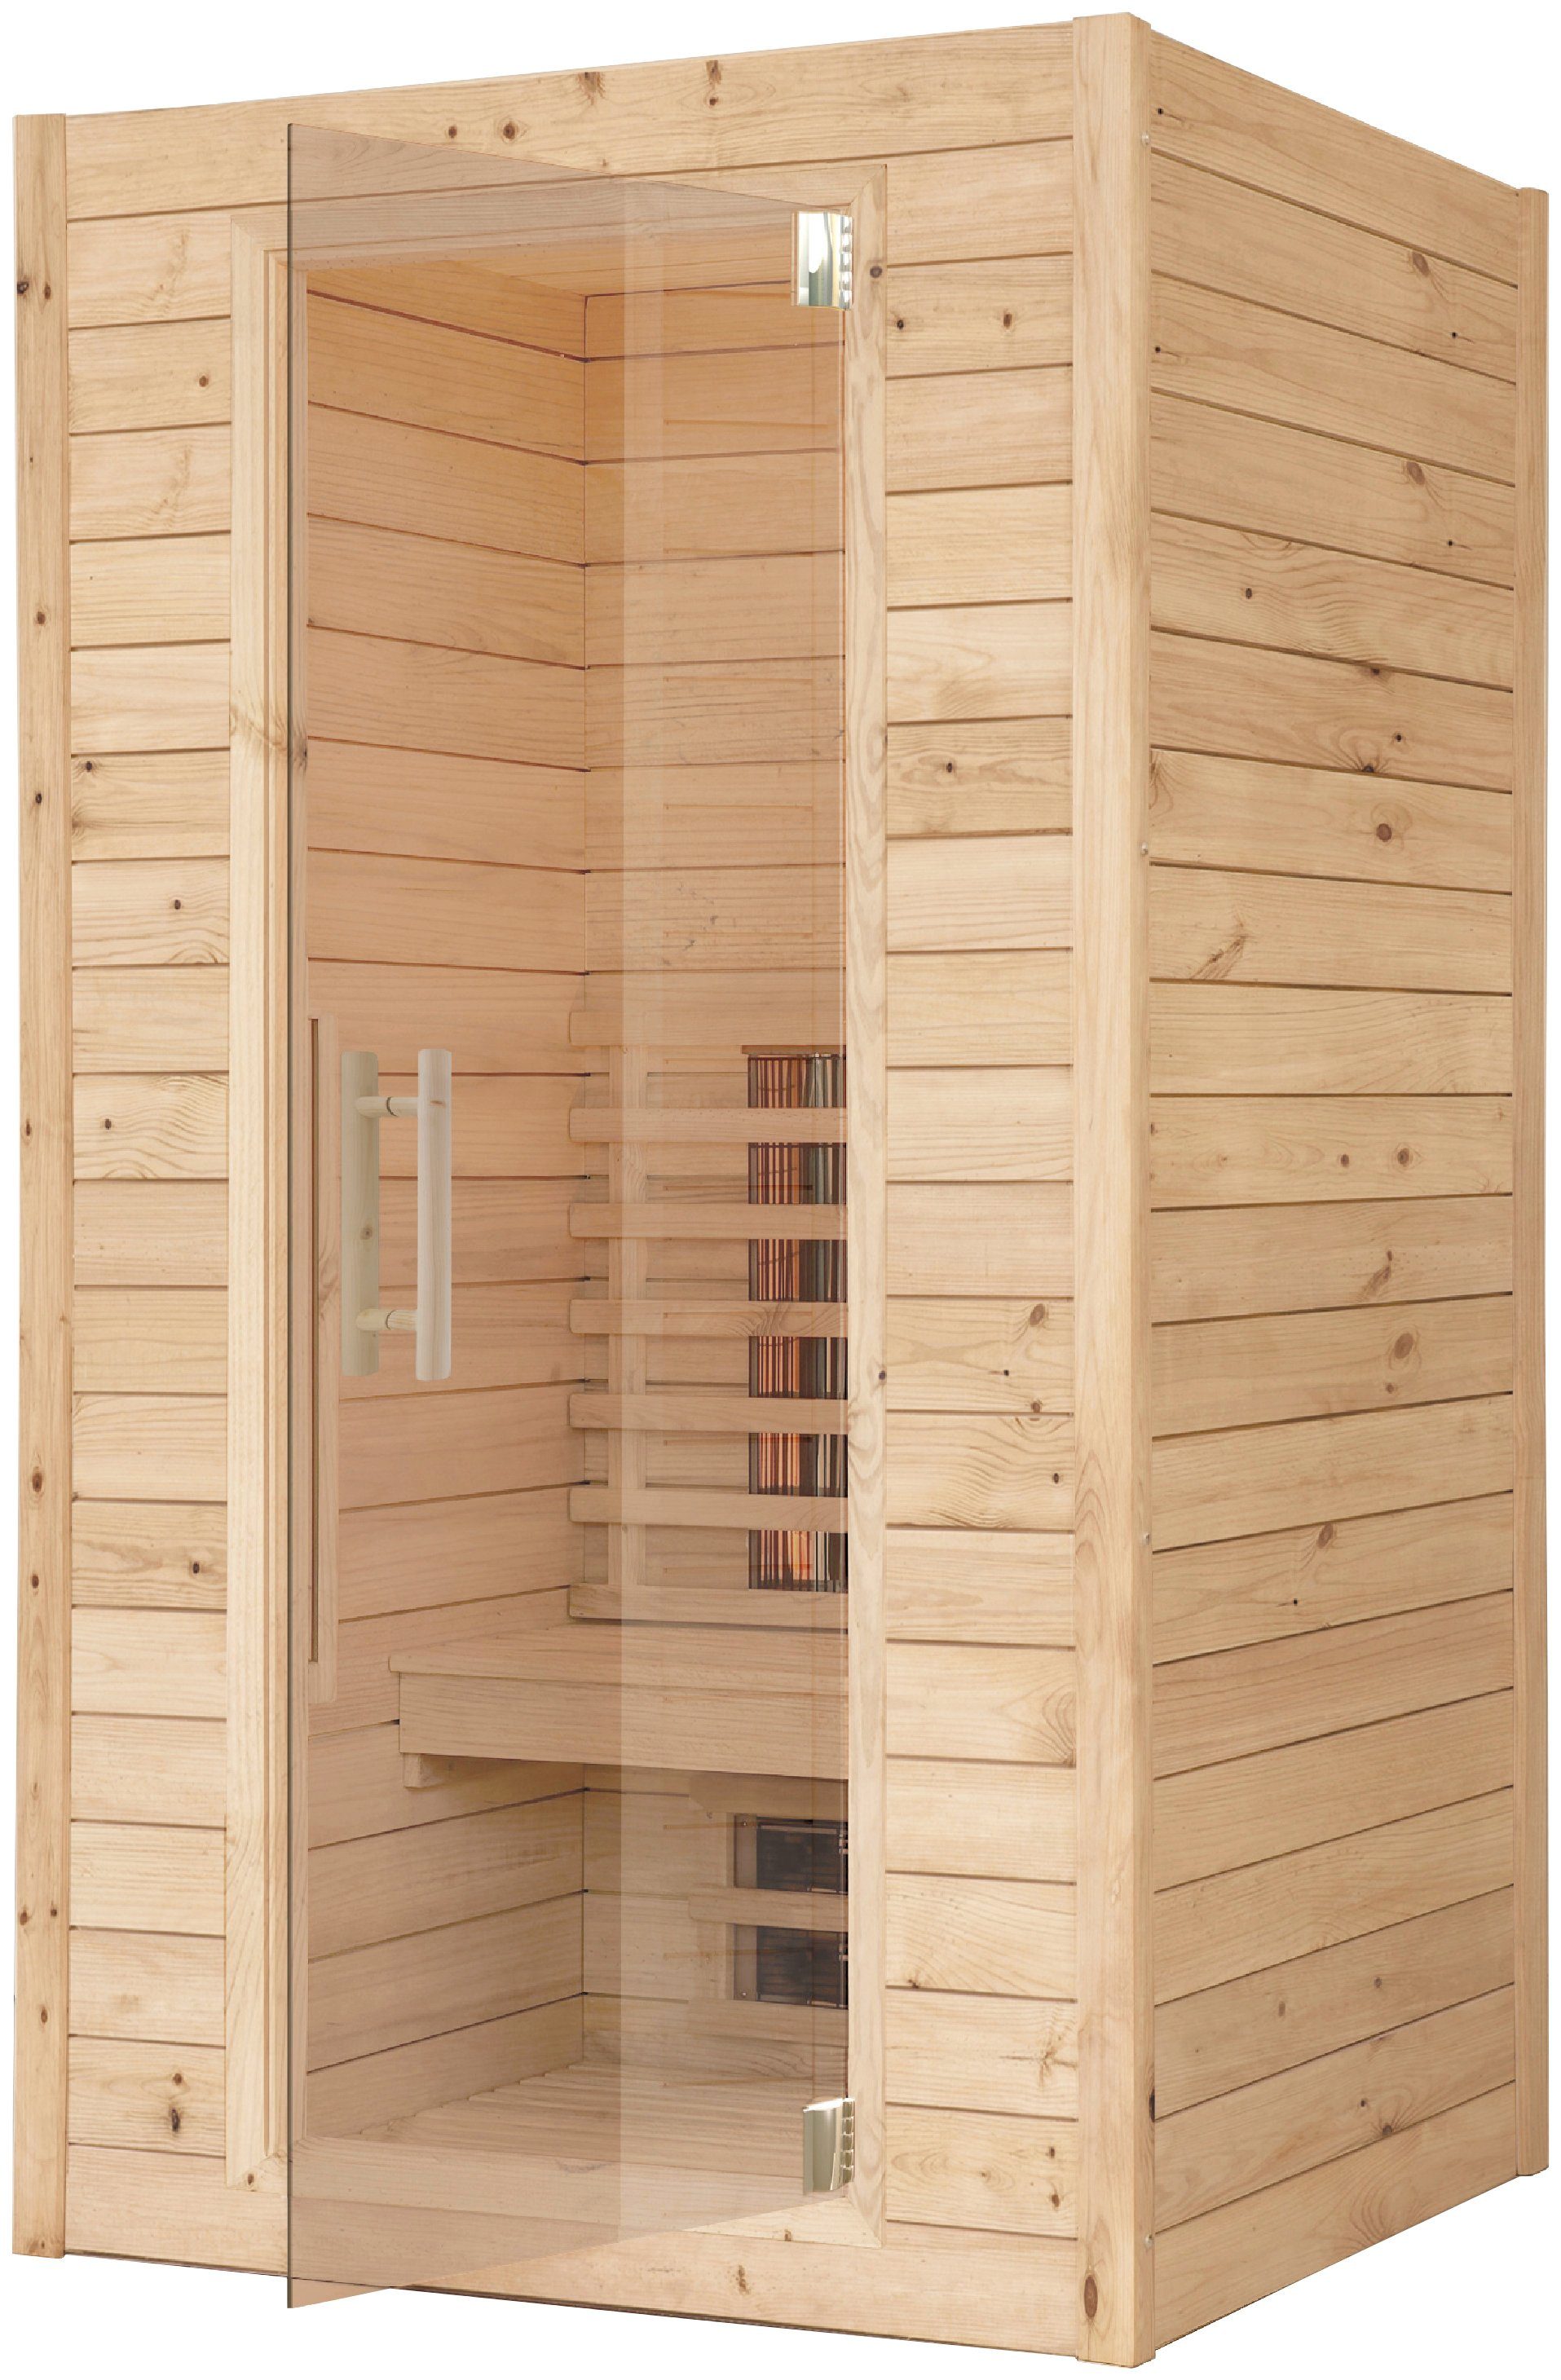 RORO Sauna & Spa Infrarotkabine ABN L100, BxTxH: 113 x 102 x 190 cm, 45 mm, Fronteinstieg, inkl Fußboden und Steuergerät